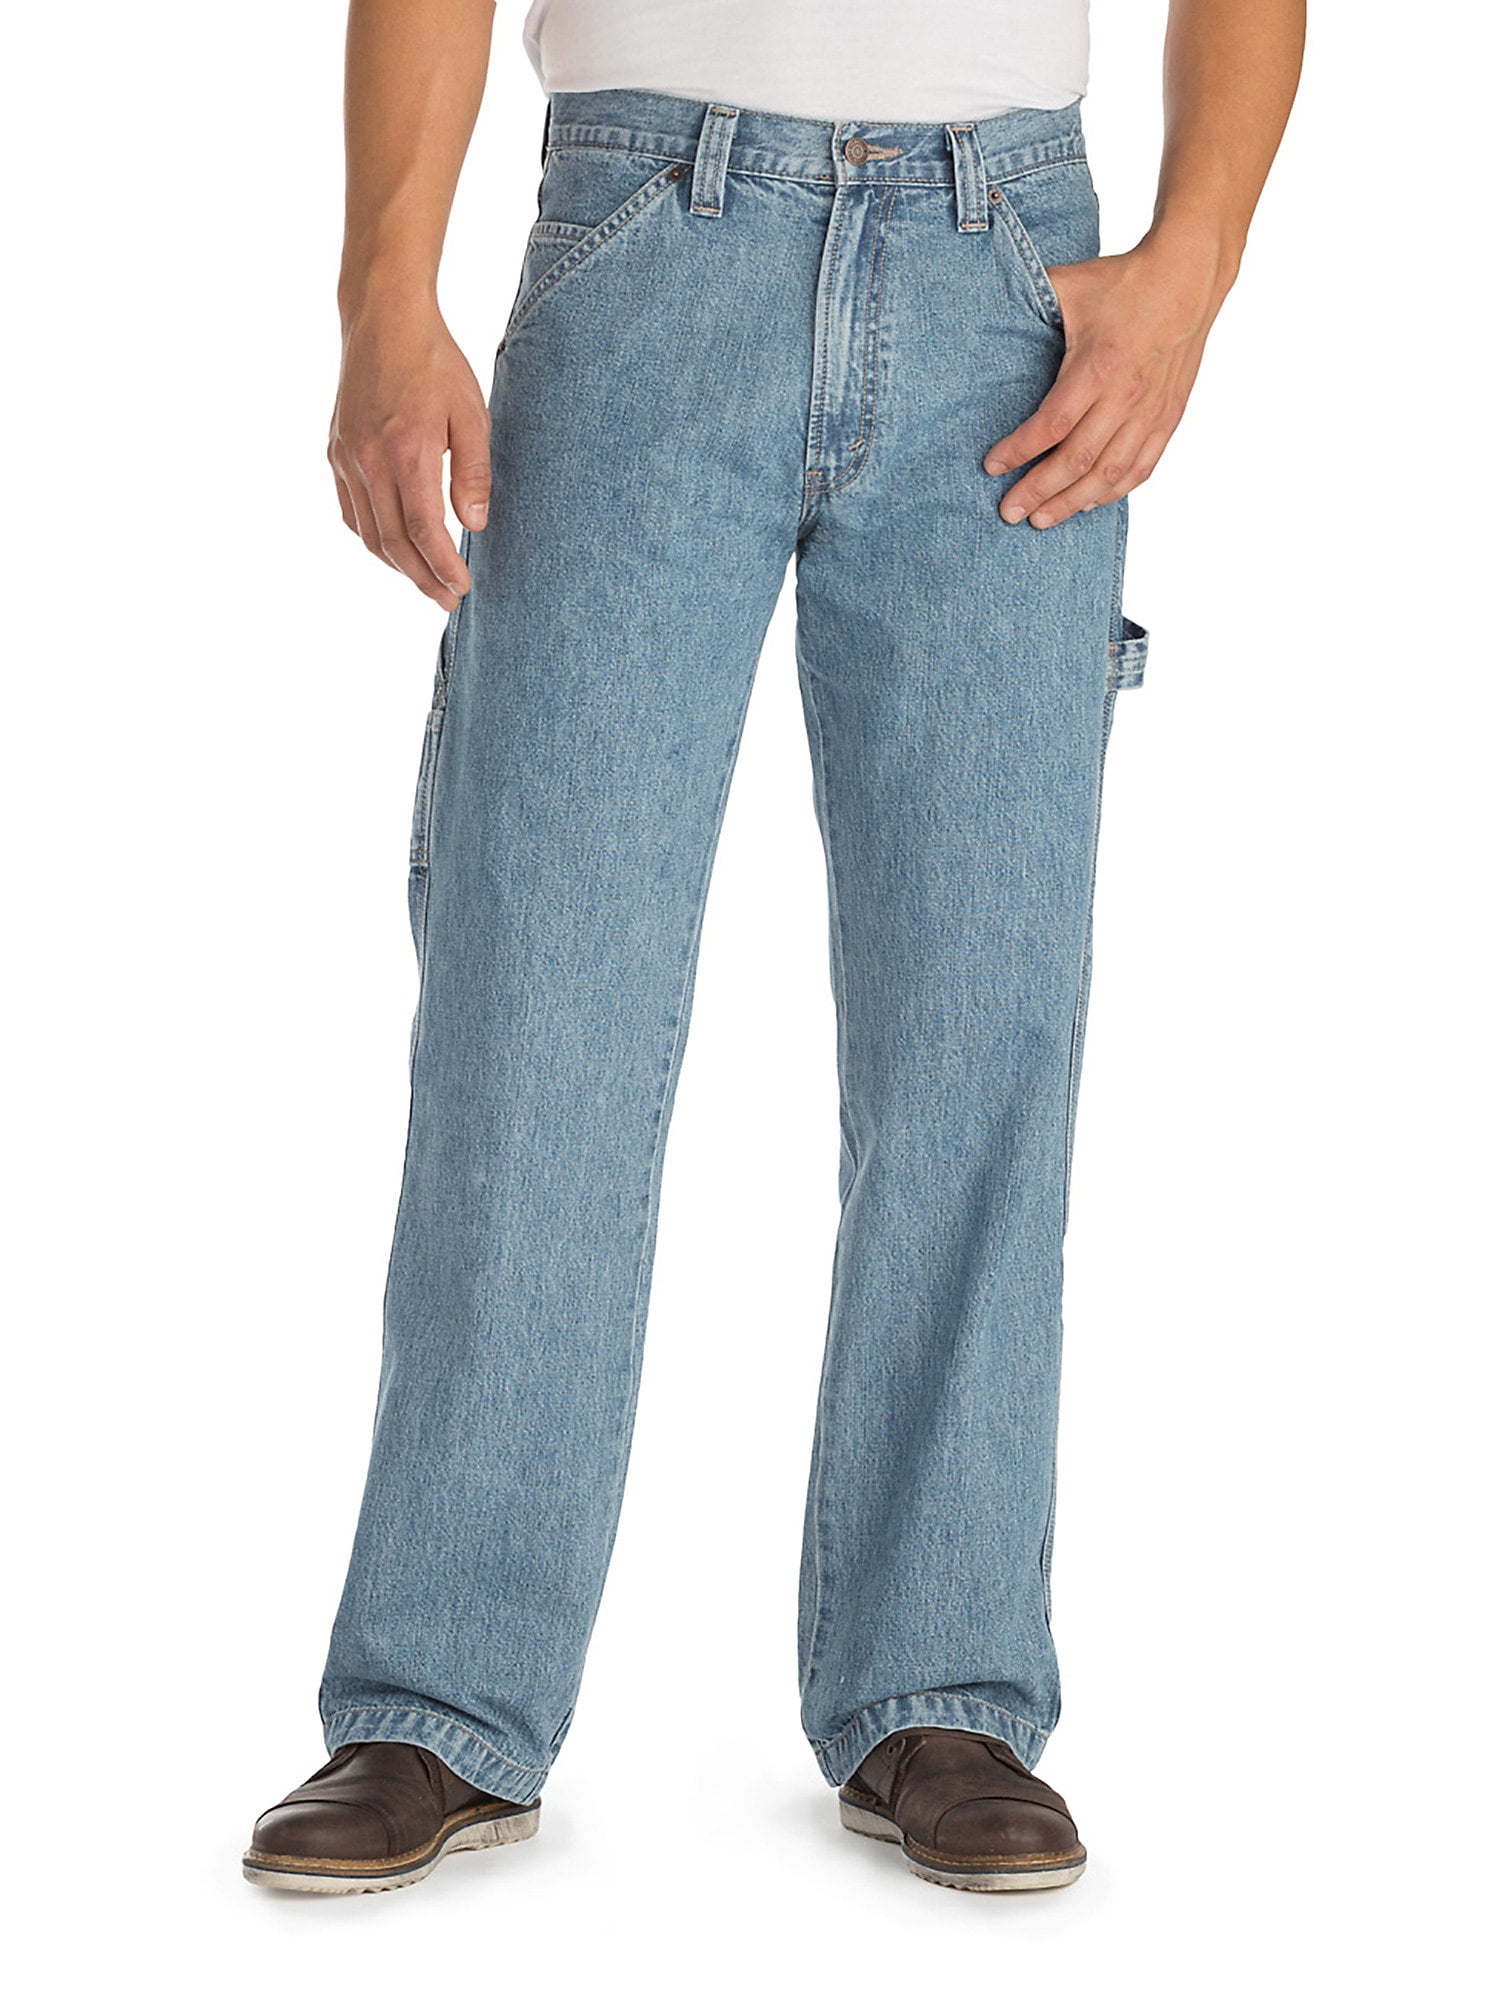 signature carpenter jeans